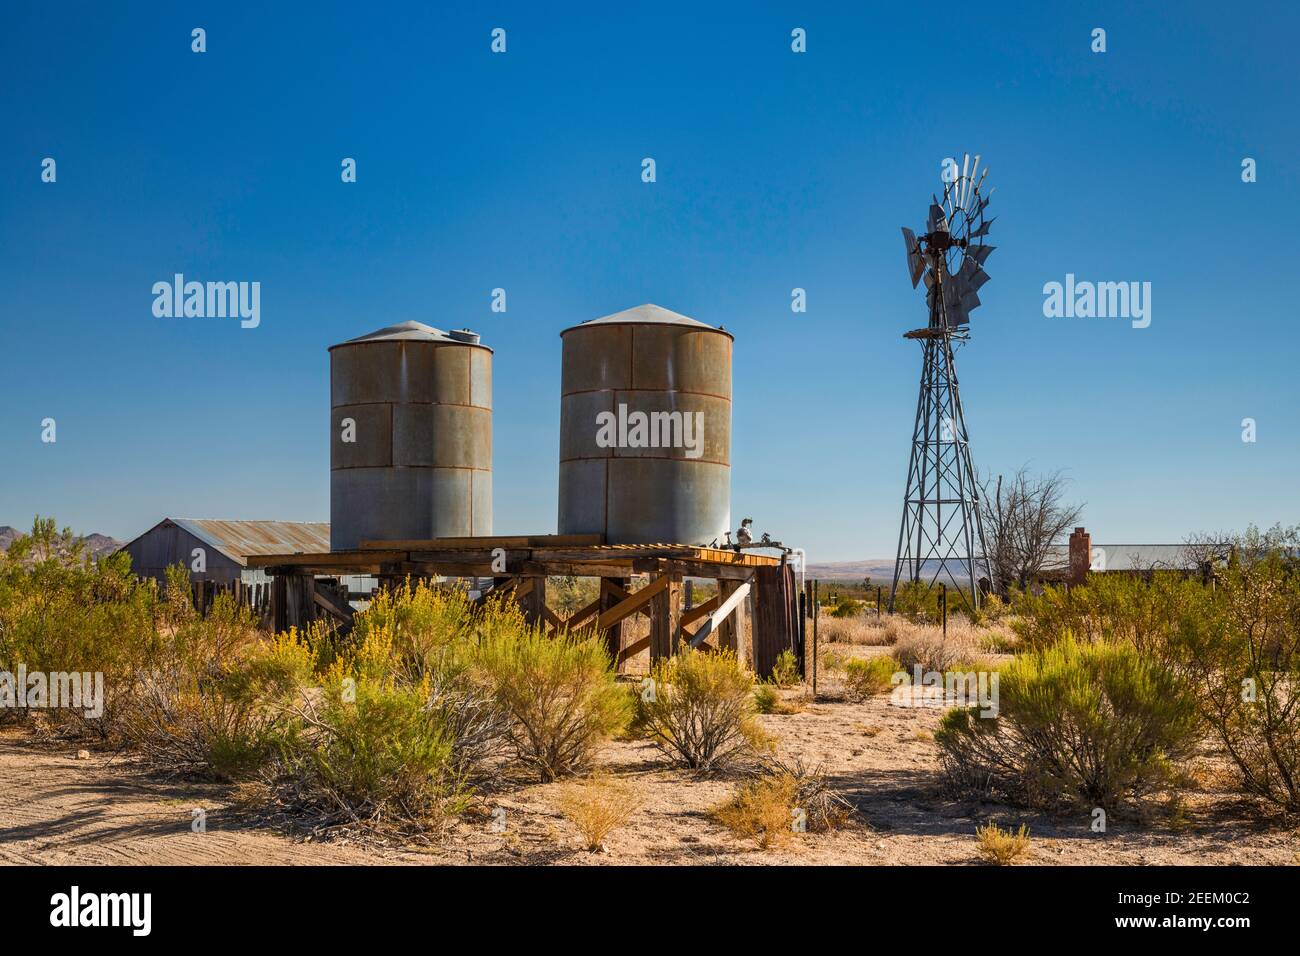 Serbatoi d'acqua, pompa d'acqua presso il ranch di Lanfair, Lanfair Valley, Mojave National Preserve, California, USA Foto Stock